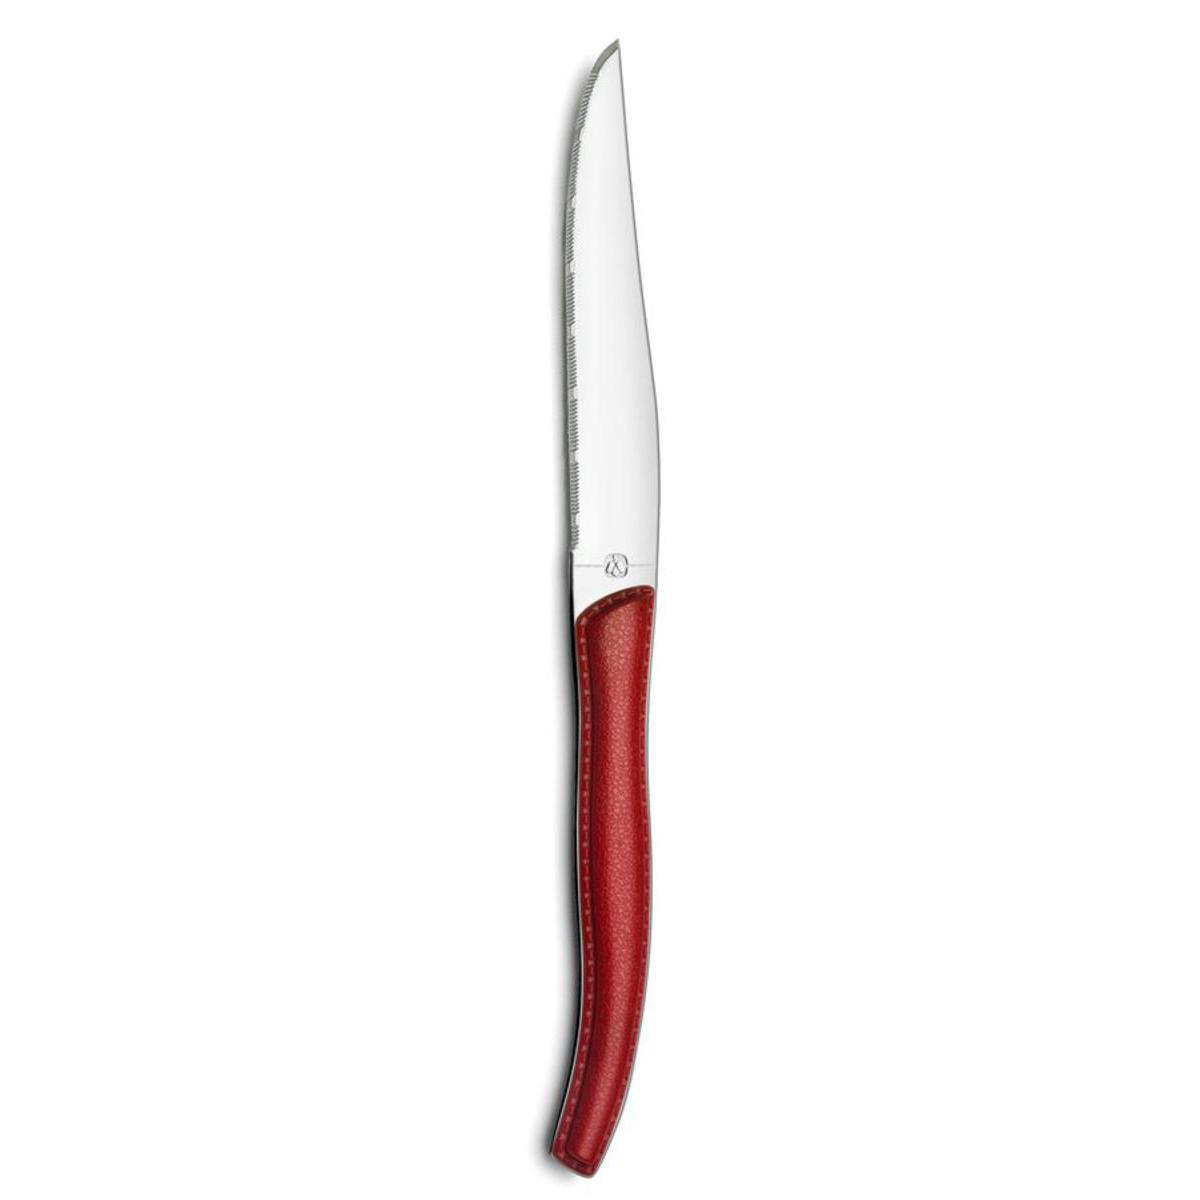 Couteau Sky lag en acier inoxydable et manche ABS effet cuir - Taille standard - Rouge